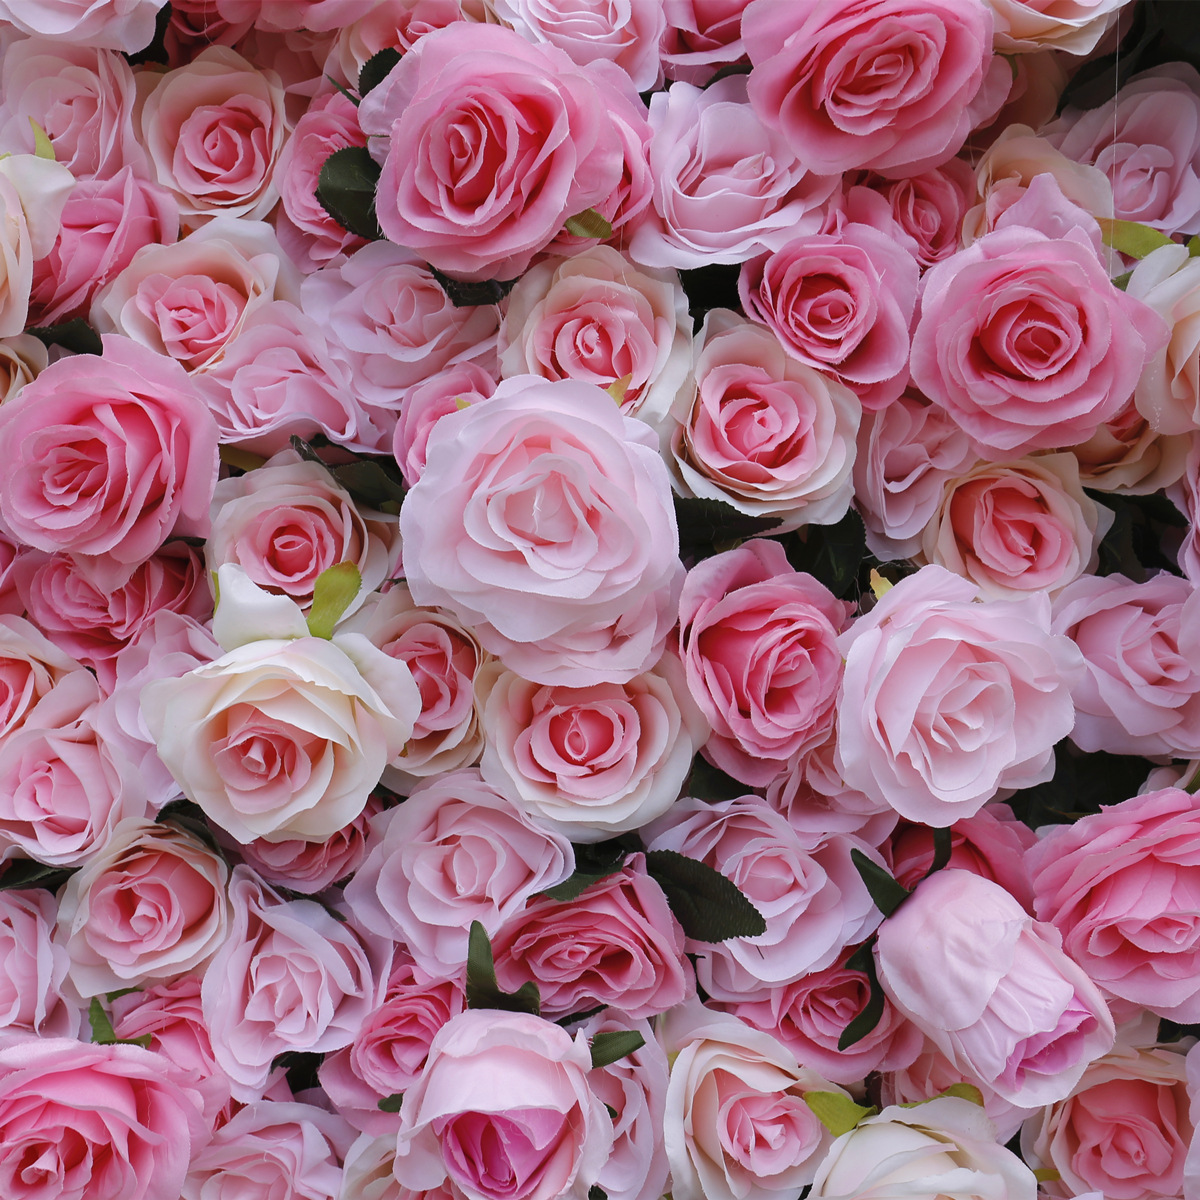 फैक्टरी सीधा बिक्री सिमुलेशन फूल दीवार कपड़ा गुलाबी रेशम फूल दीवार दुकान दरवाजा सजावट